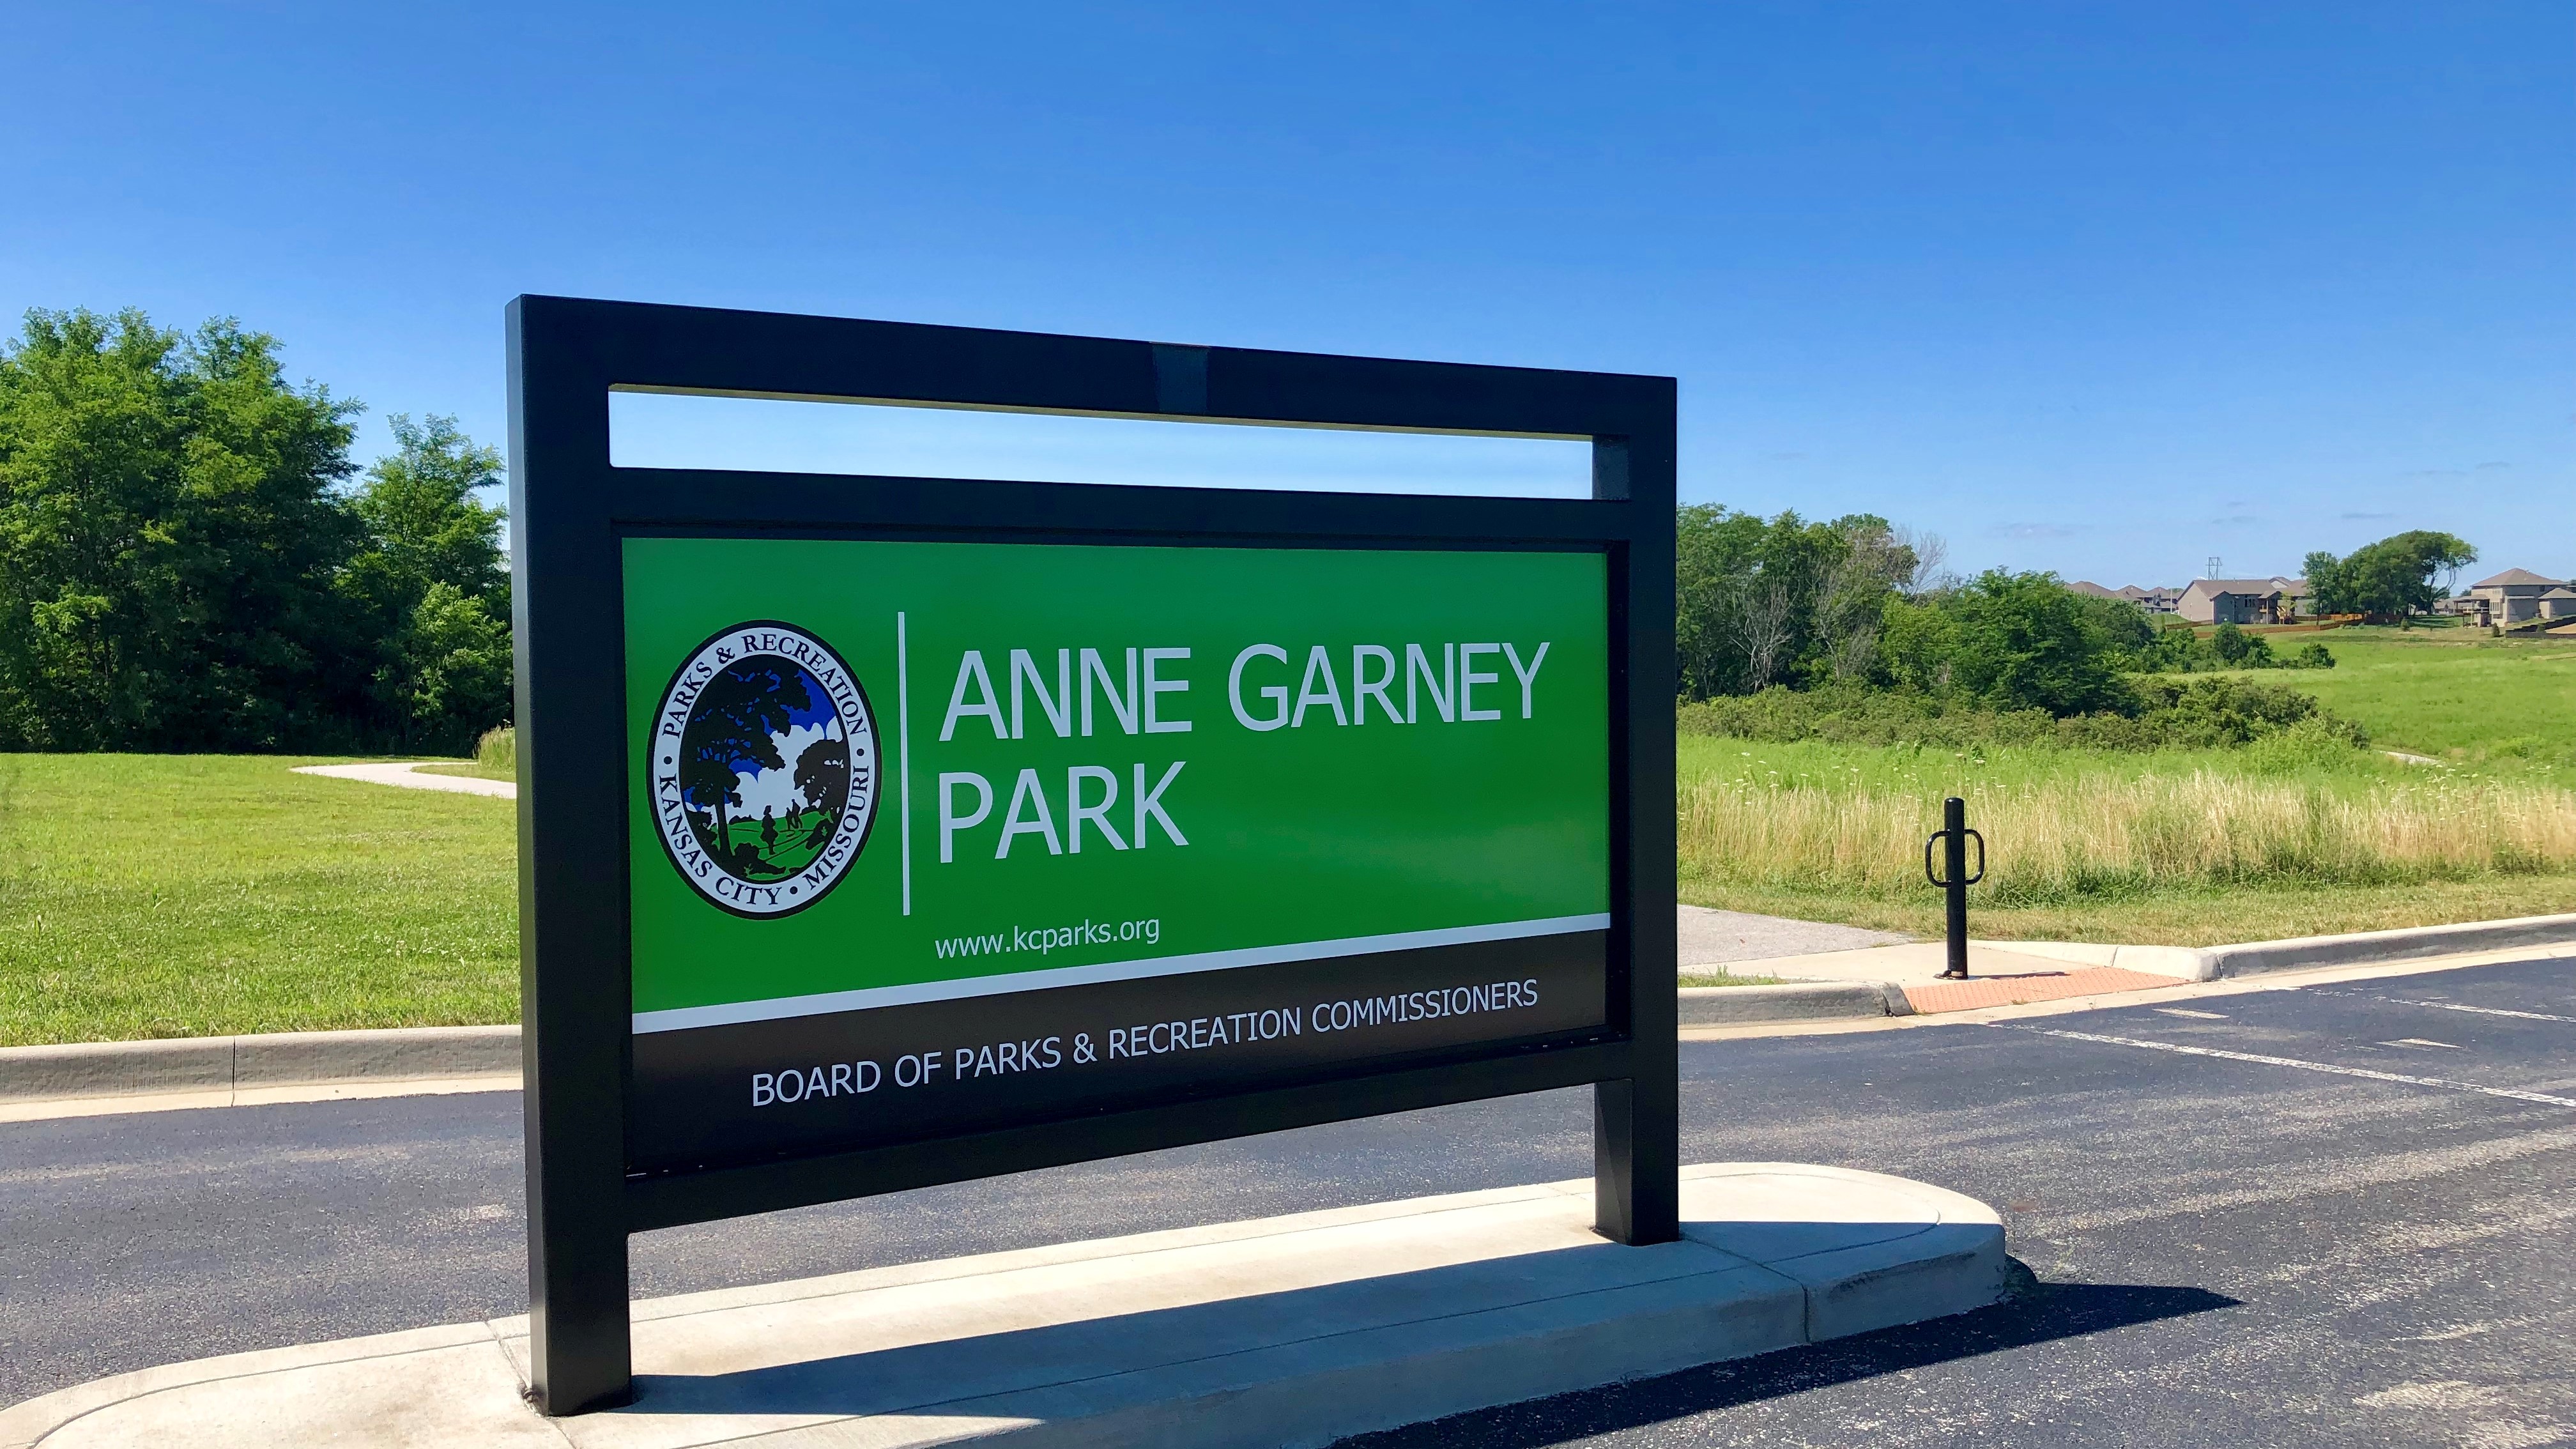 Anne Garney Park